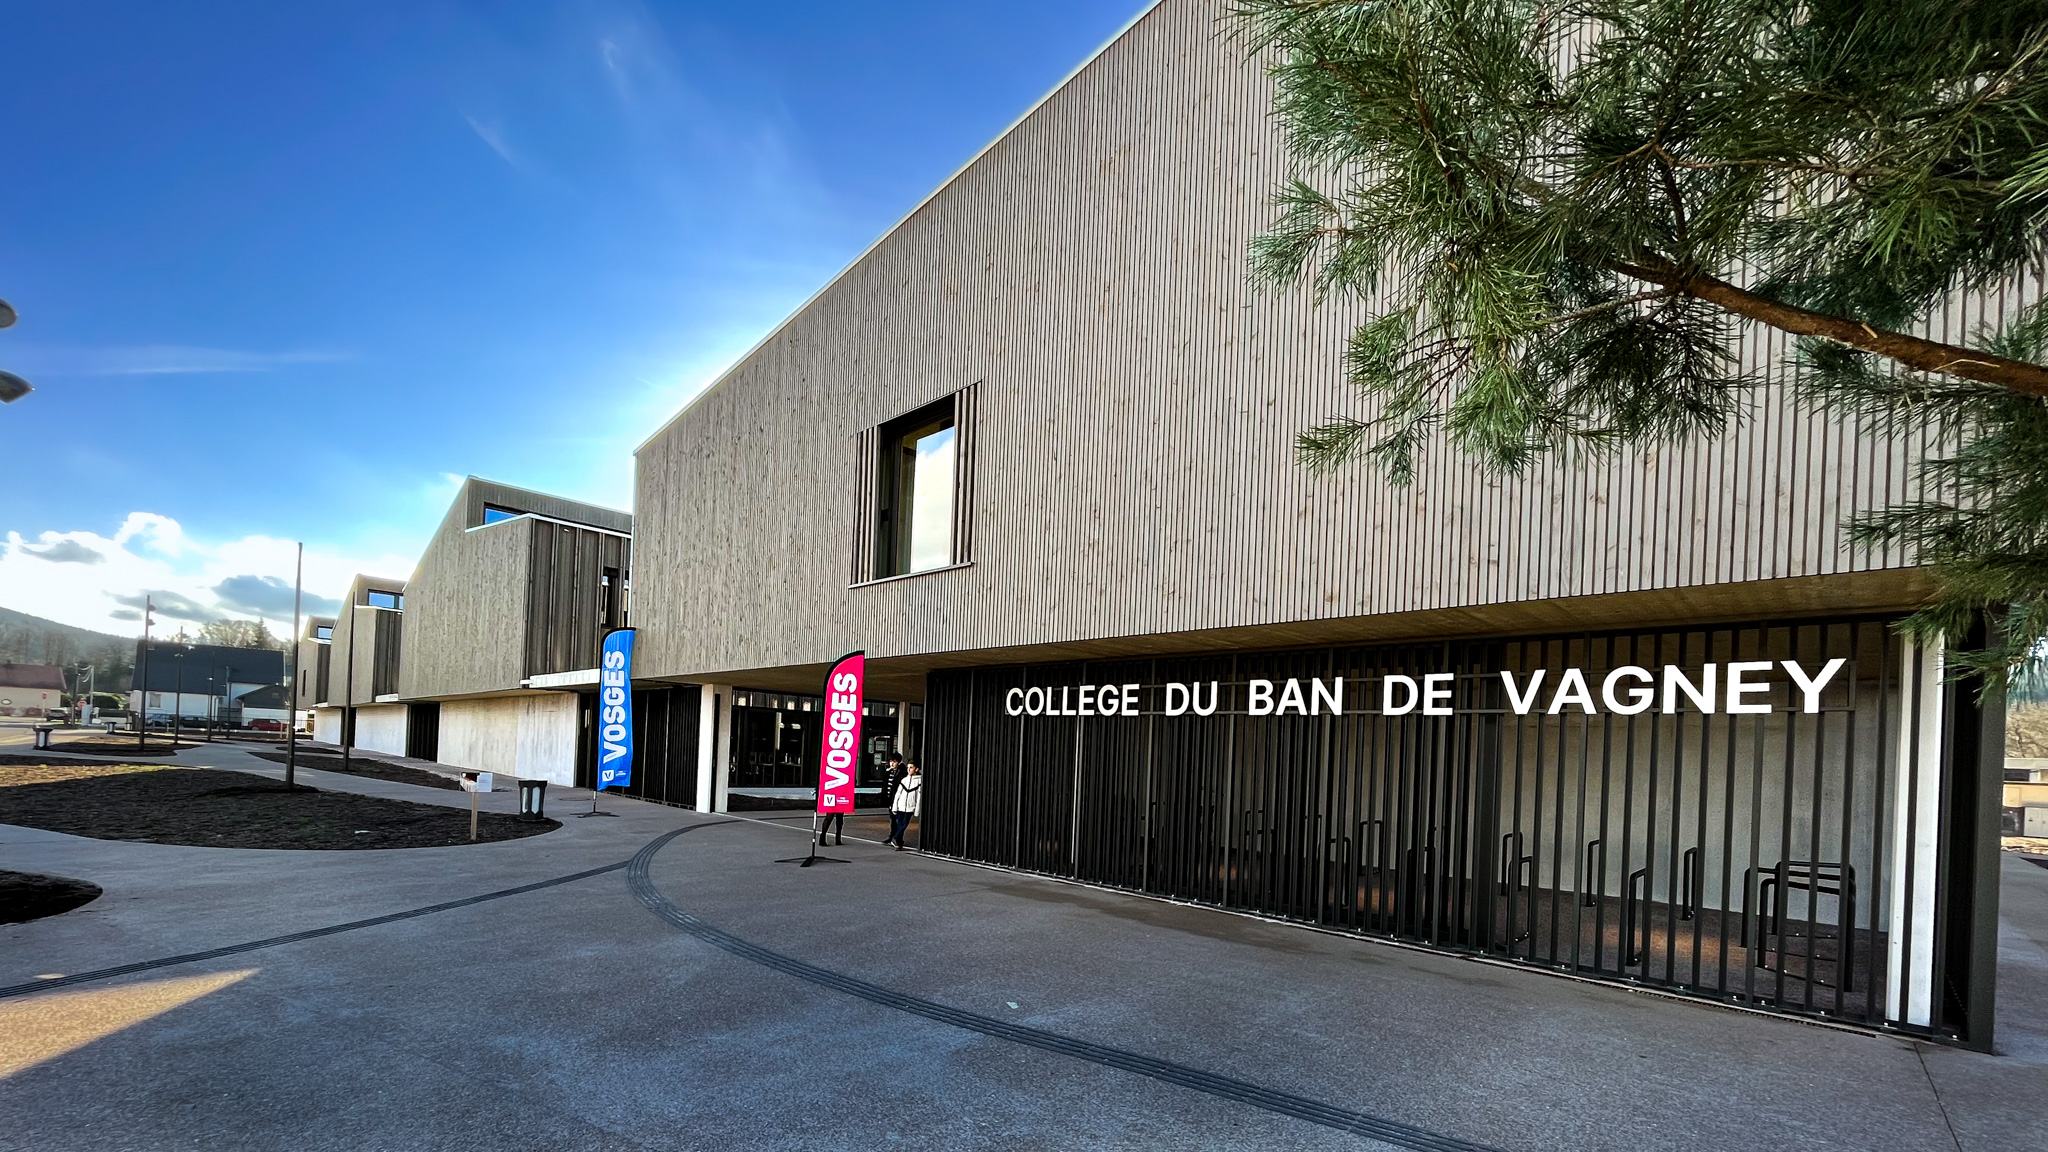 Le Département des Vosges récompensé pour le collège de Vagney